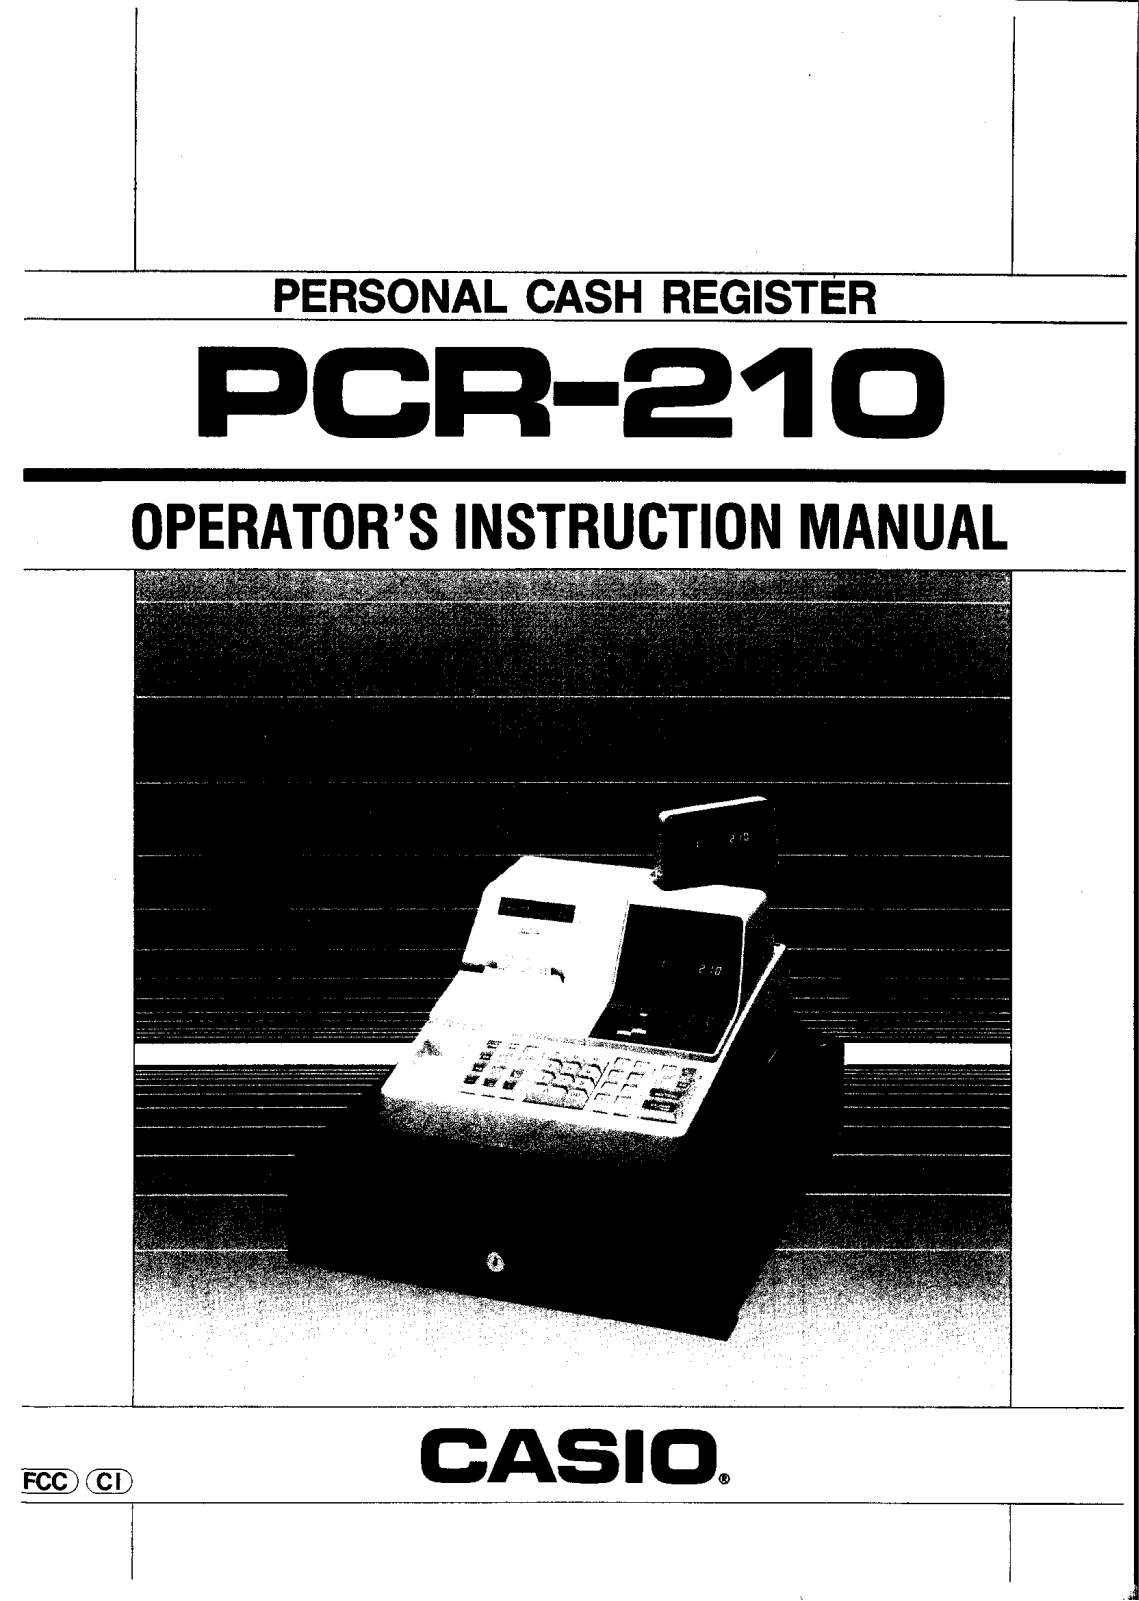 Casio PCR-210 Owner's Manual